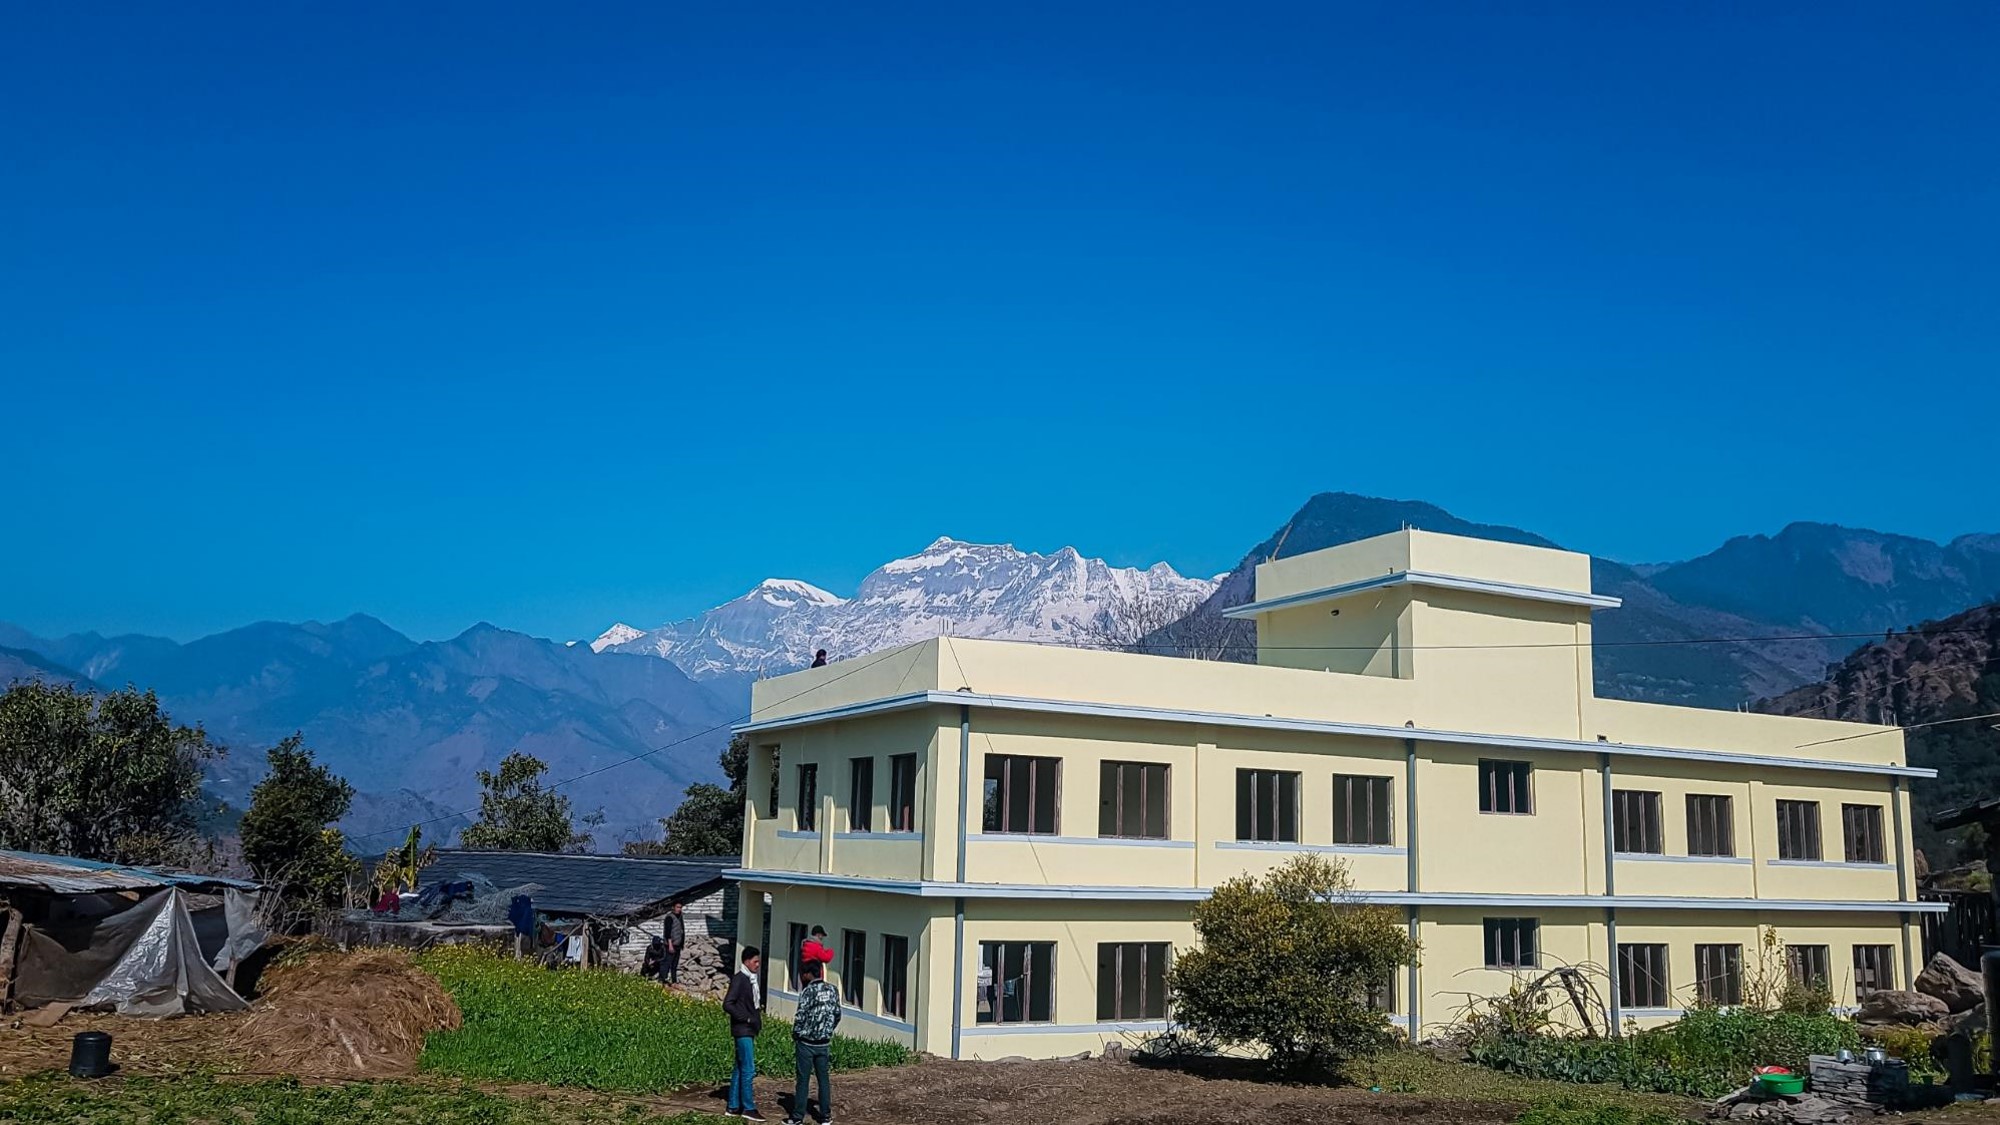 New school in Nepal